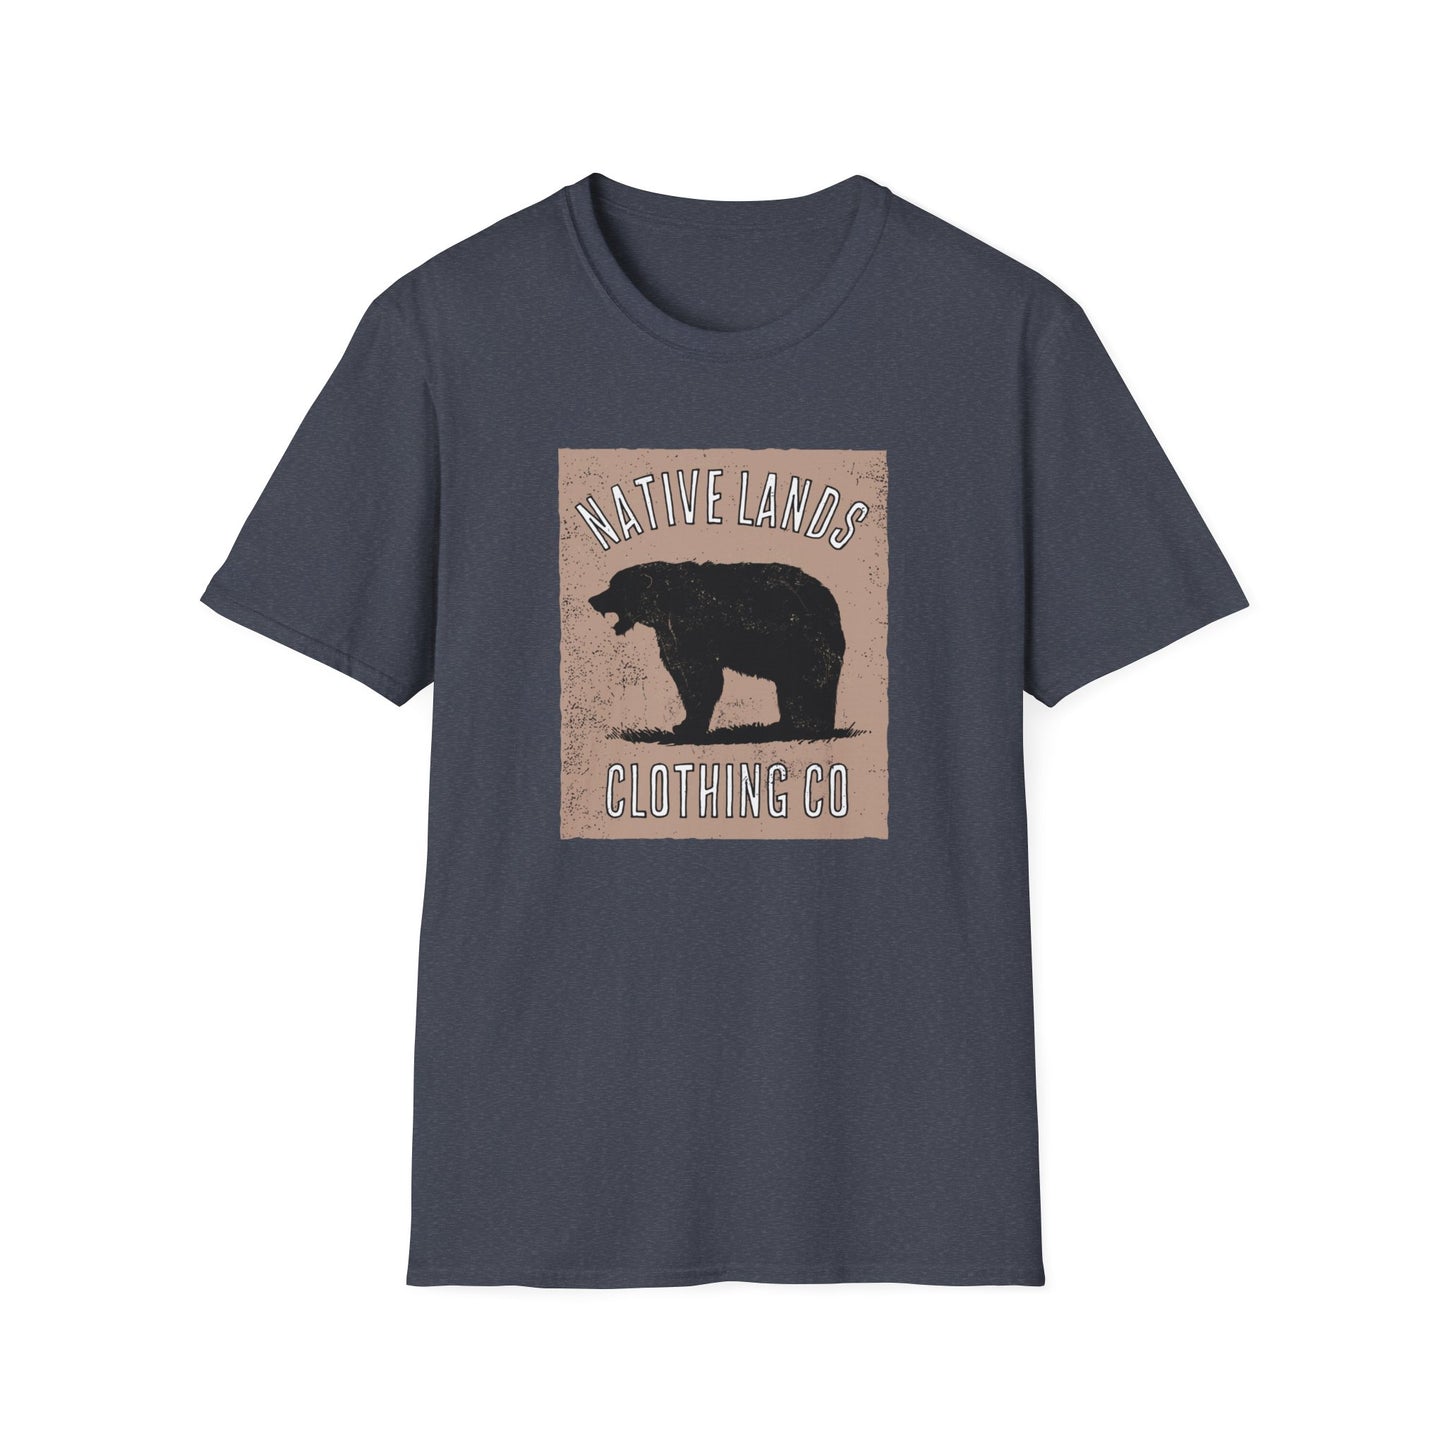 Рубашка с рычанием медведя Светло-коричневая хлопковая рубашка для коренных американцев